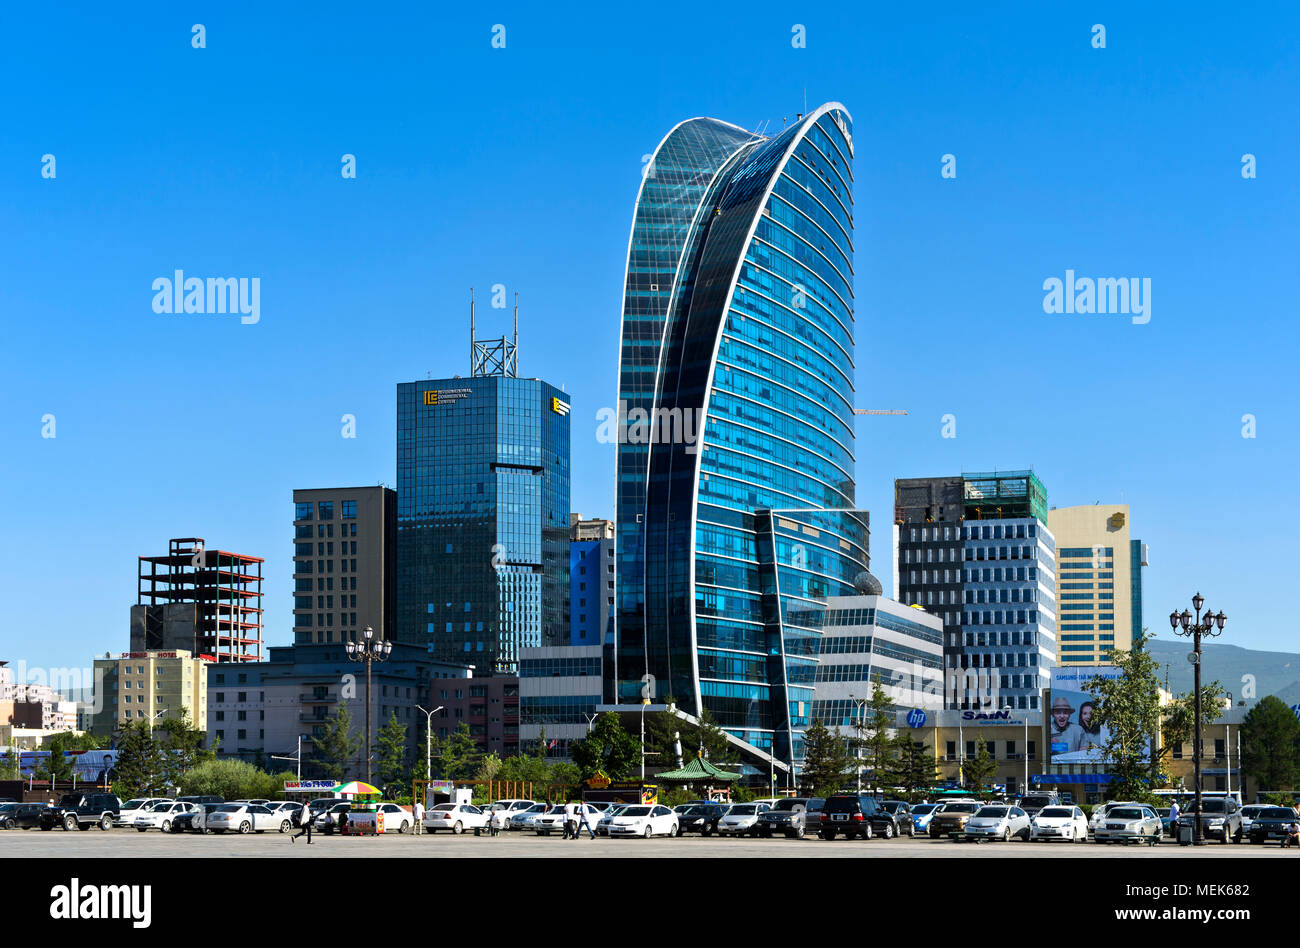 Das moderne Stadtzentrum mit dem Internationalen Handelszentrum, das Blue Sky Hotel und das Sheraton, an Sukhbataar Square, Ulaanbaatar, Mongolei Stockfoto